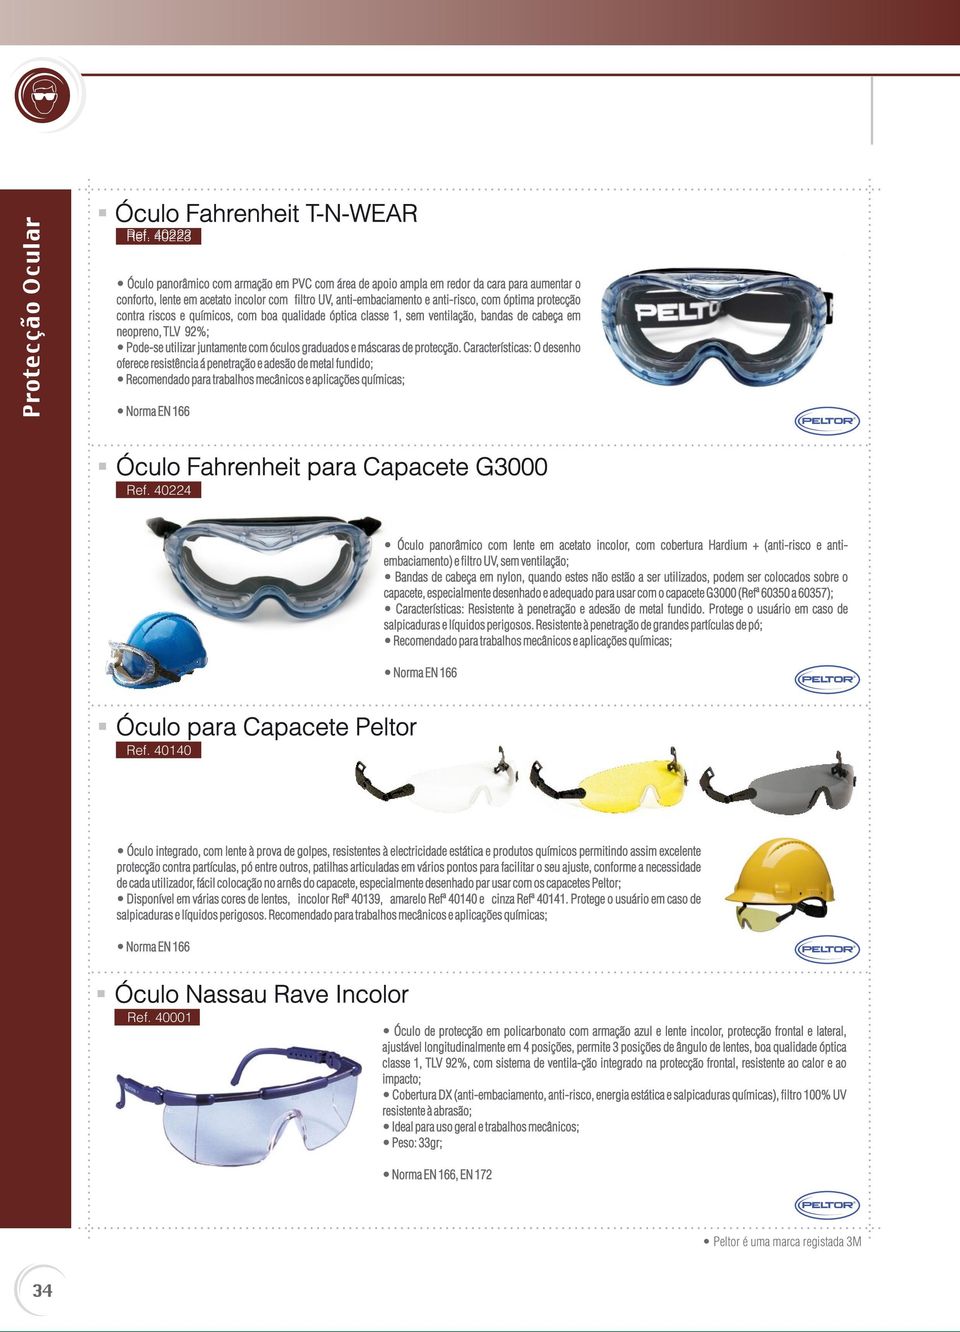 protecção contra riscos e químicos, com boa qualidade óptica classe 1, sem ventilação, bandas de cabeça em neopreno, TLV 92%; Pode-se utilizar juntamente com óculos graduados e máscaras de protecção.